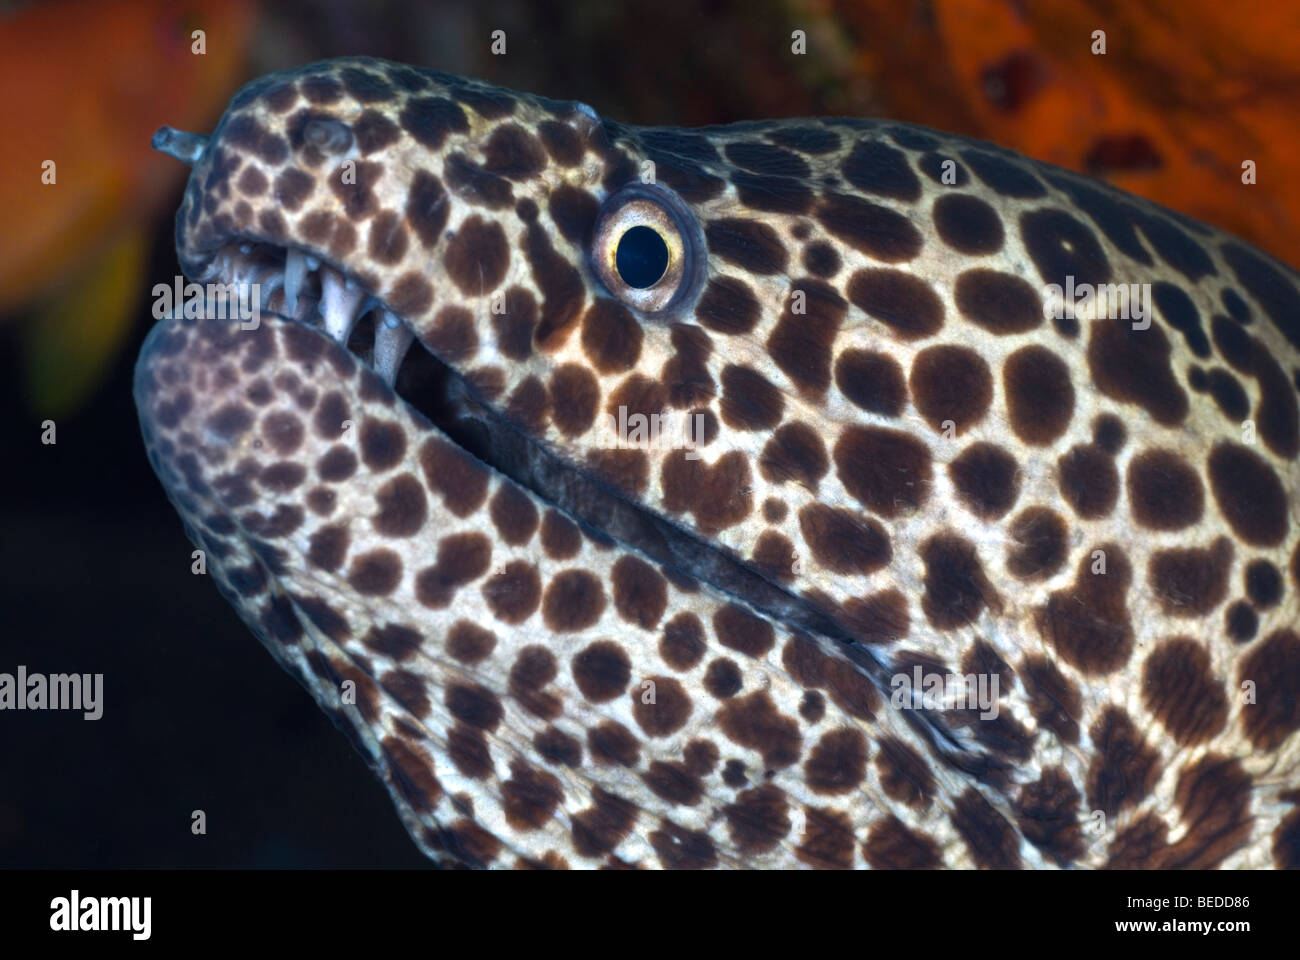 Honeycomb Moray eel under water Stock Photo